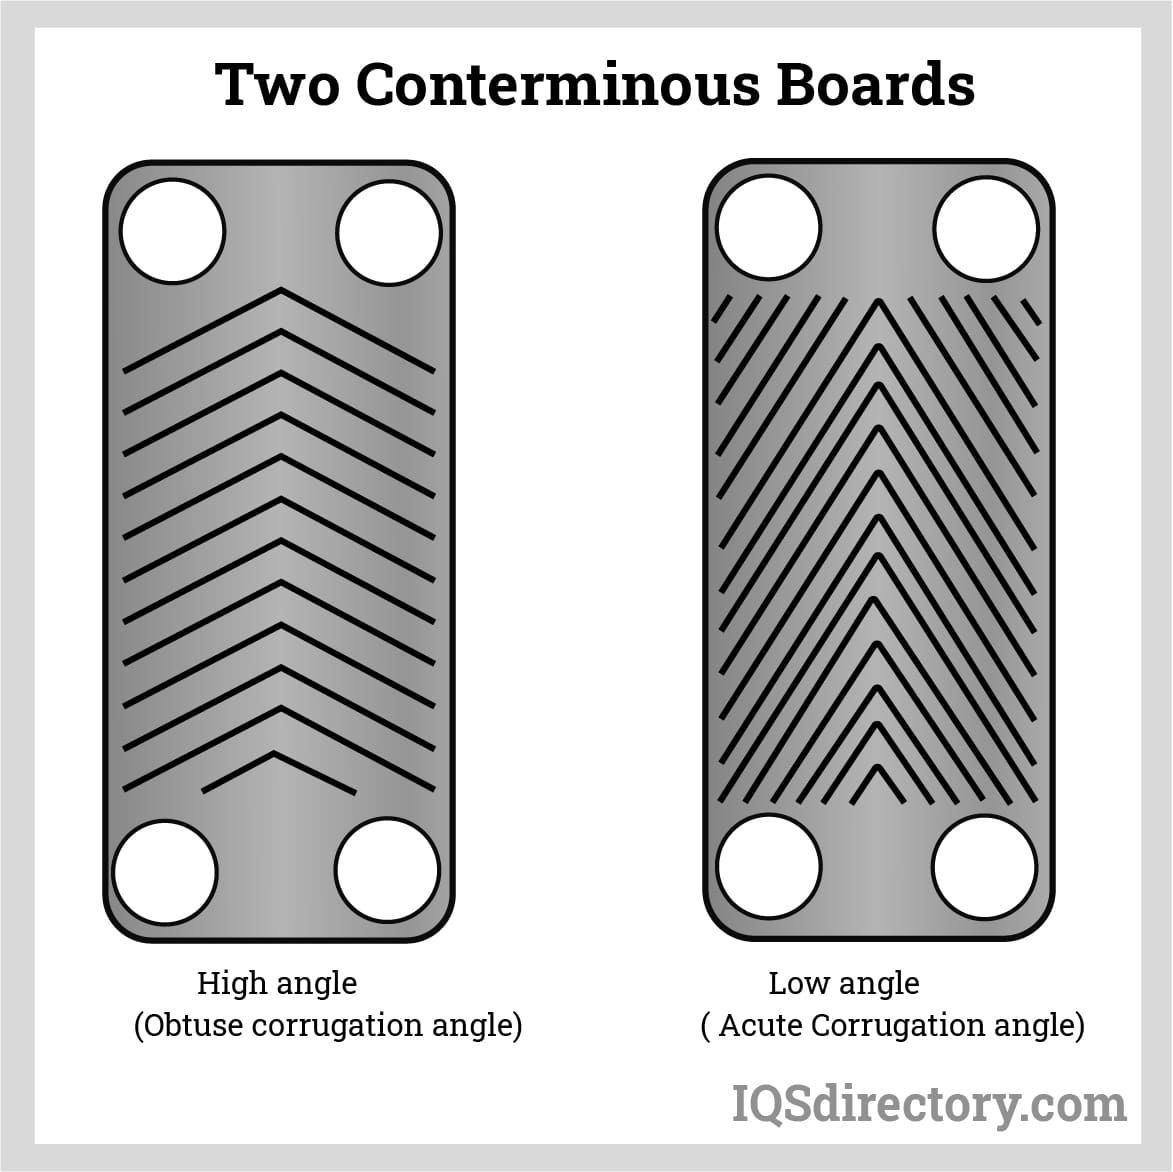 Two Conterminous Boards